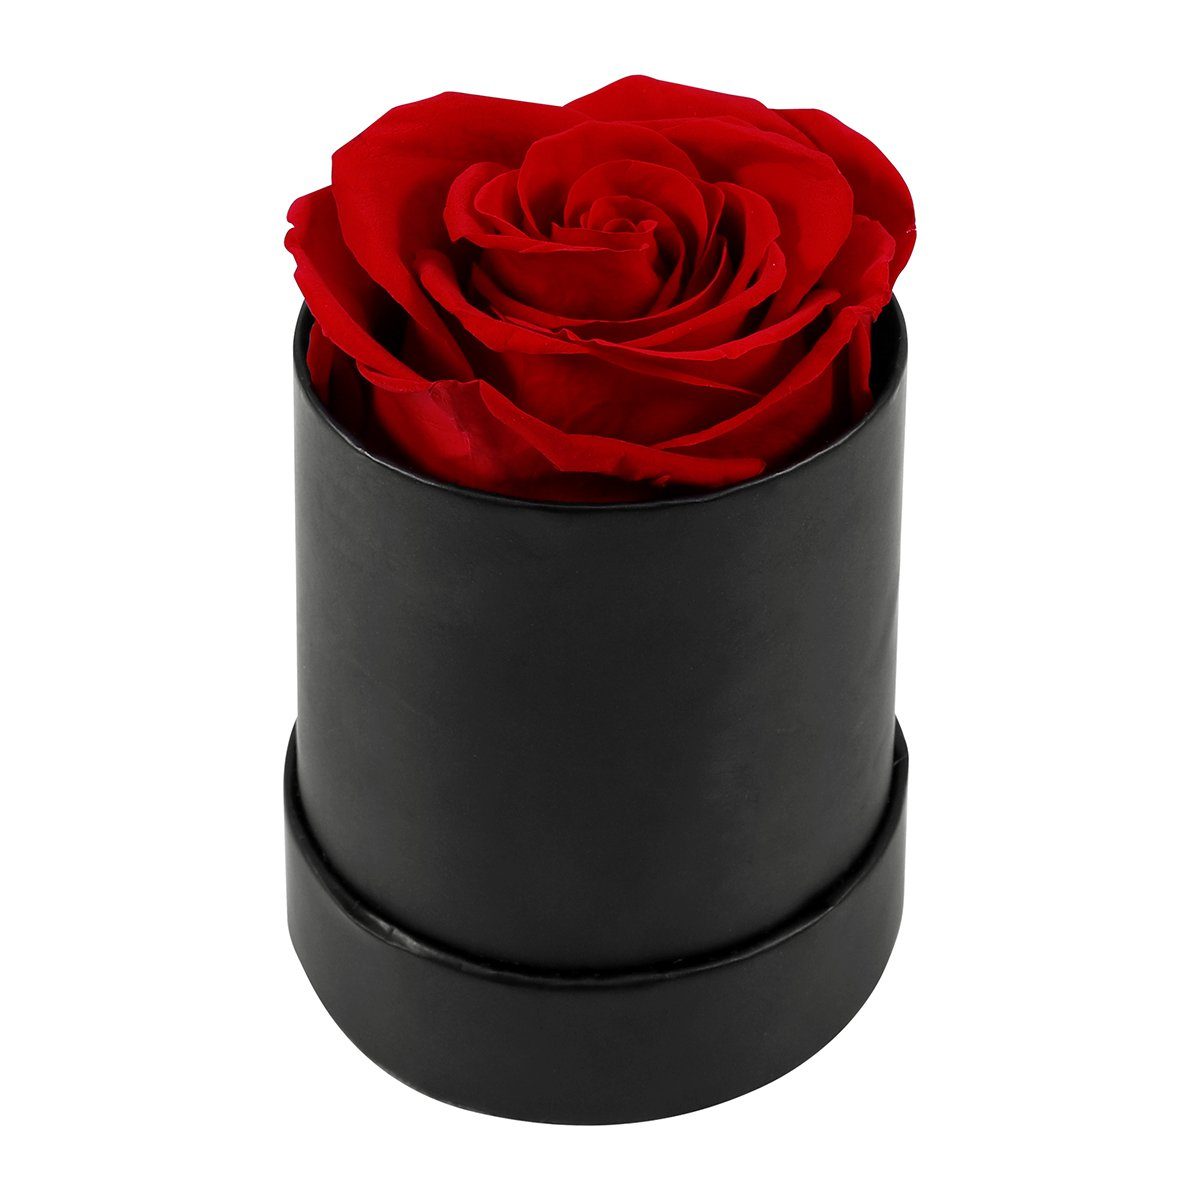 Kunstblume Konservierte Rosen, Romantische Geschenke zum Valentinstag, Sunicol, Höhe 8 cm